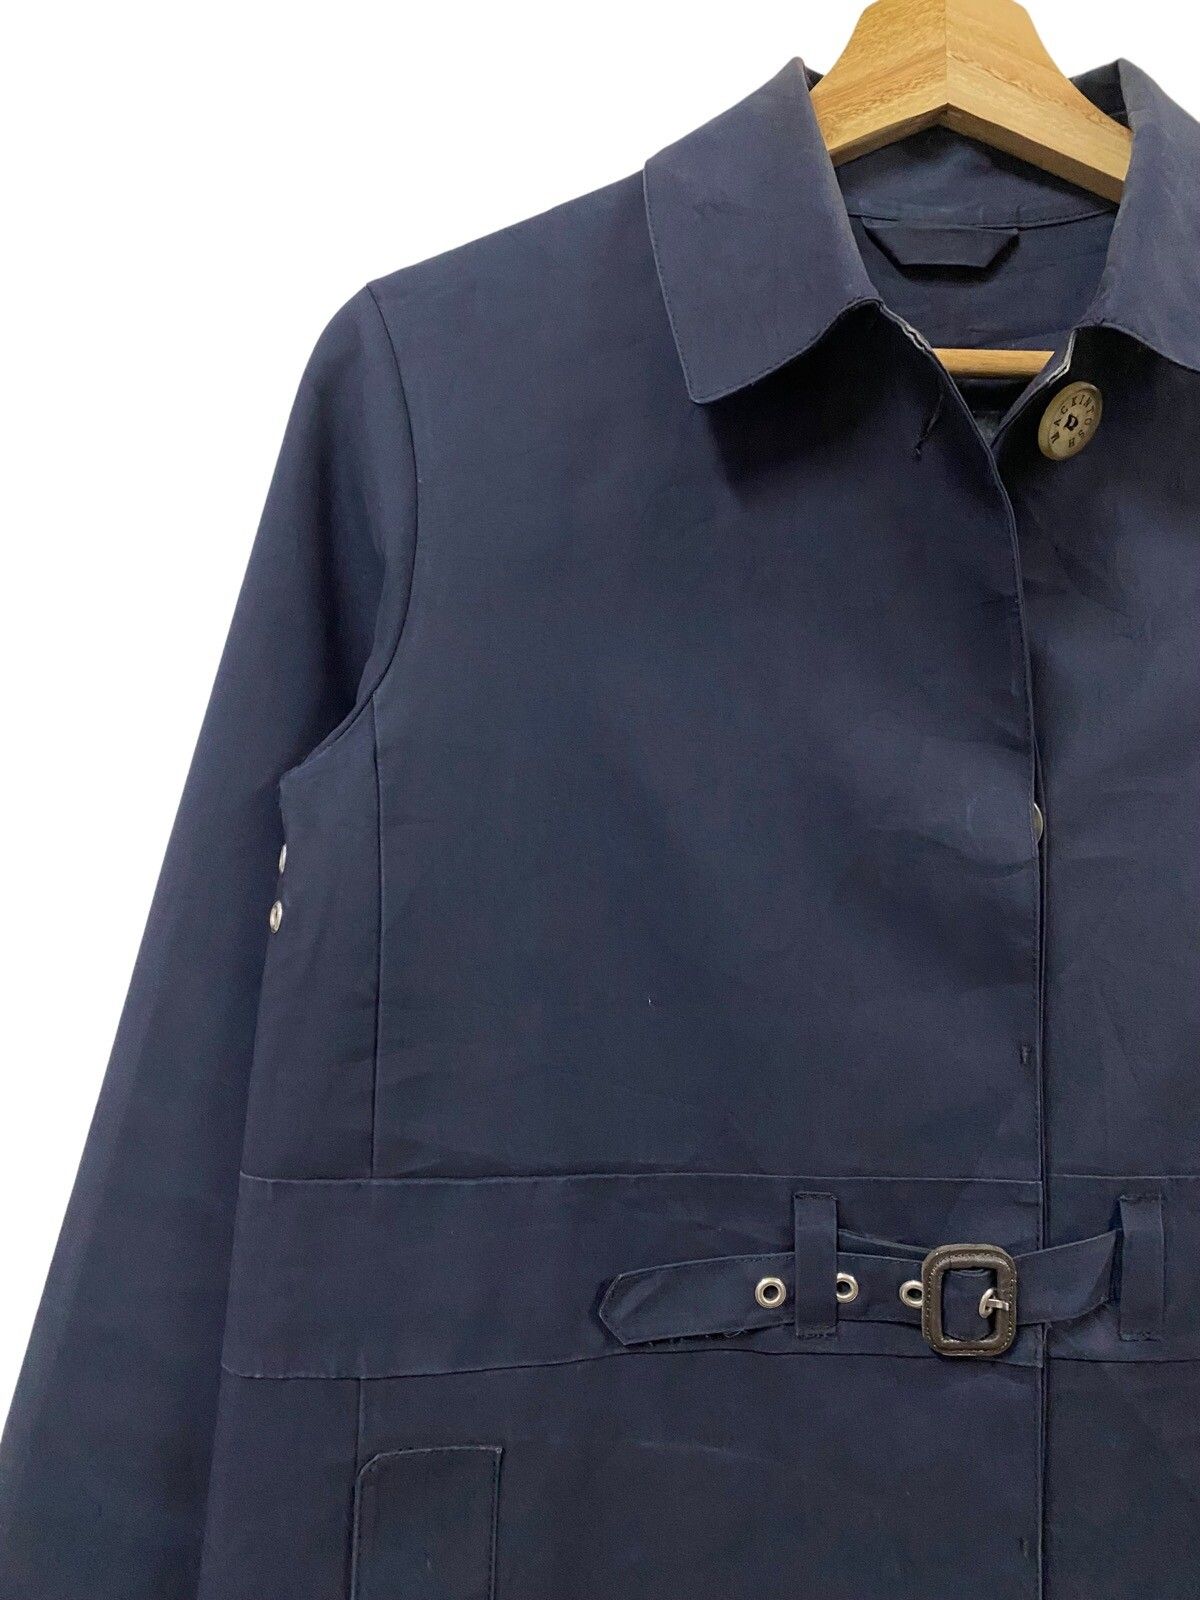 Mackintosh Genuine Handmade Trenchcoat Belted Jacket - 7